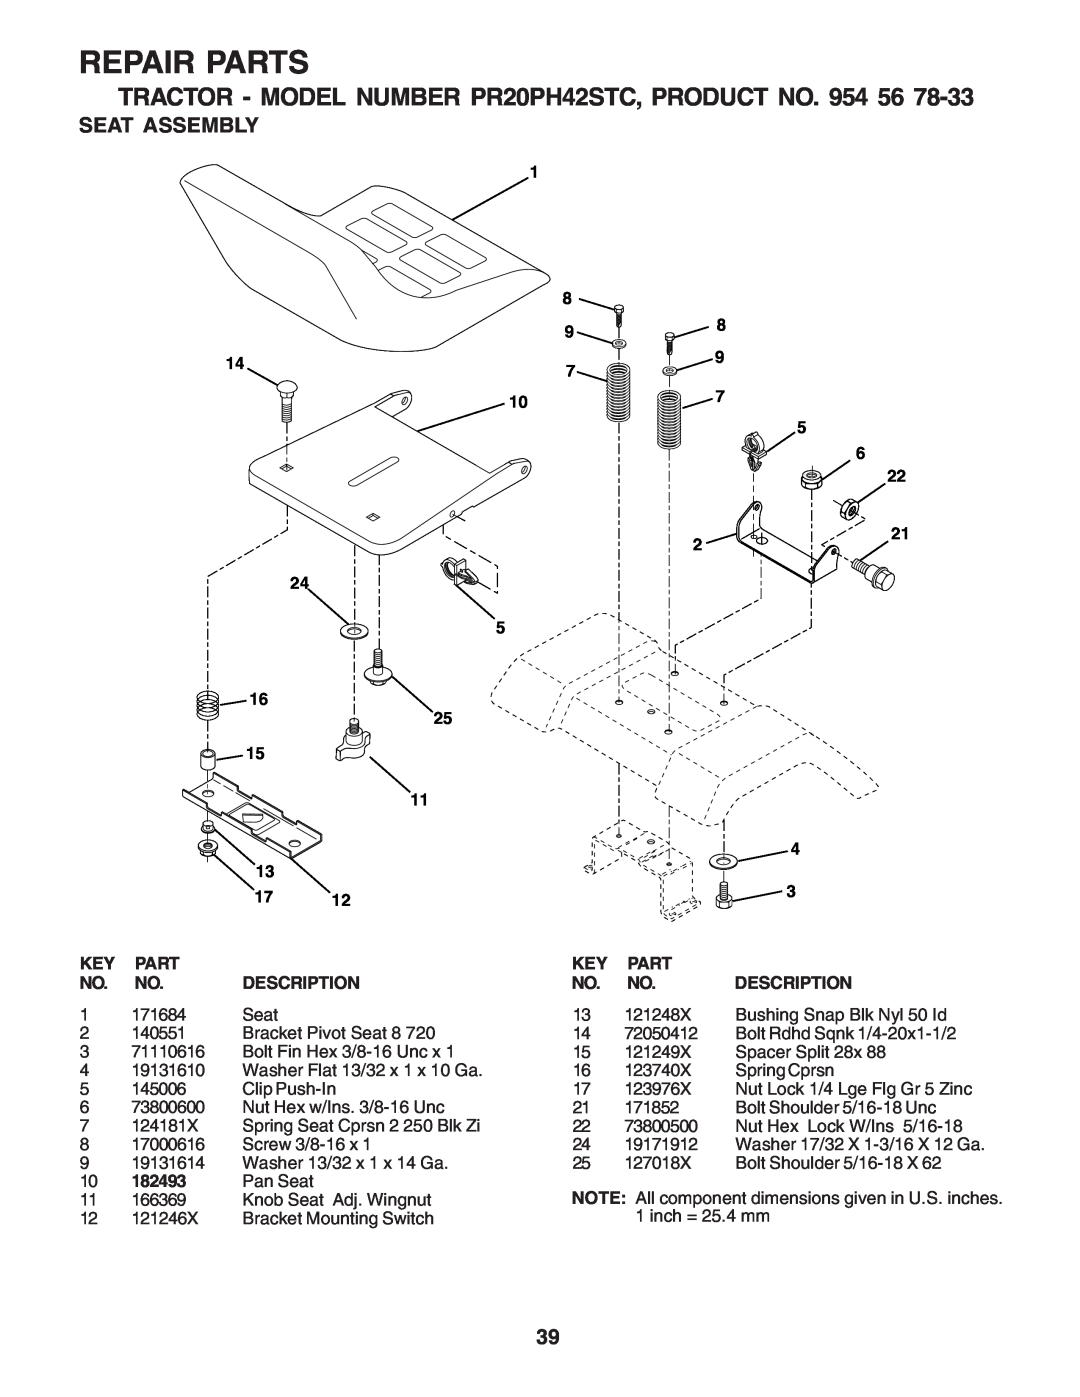 Poulan PR20PH42STC Seat Assembly, Repair Parts, 24 5 16, 13 17 KEY PART NO. NO. DESCRIPTION, 182493, Description 